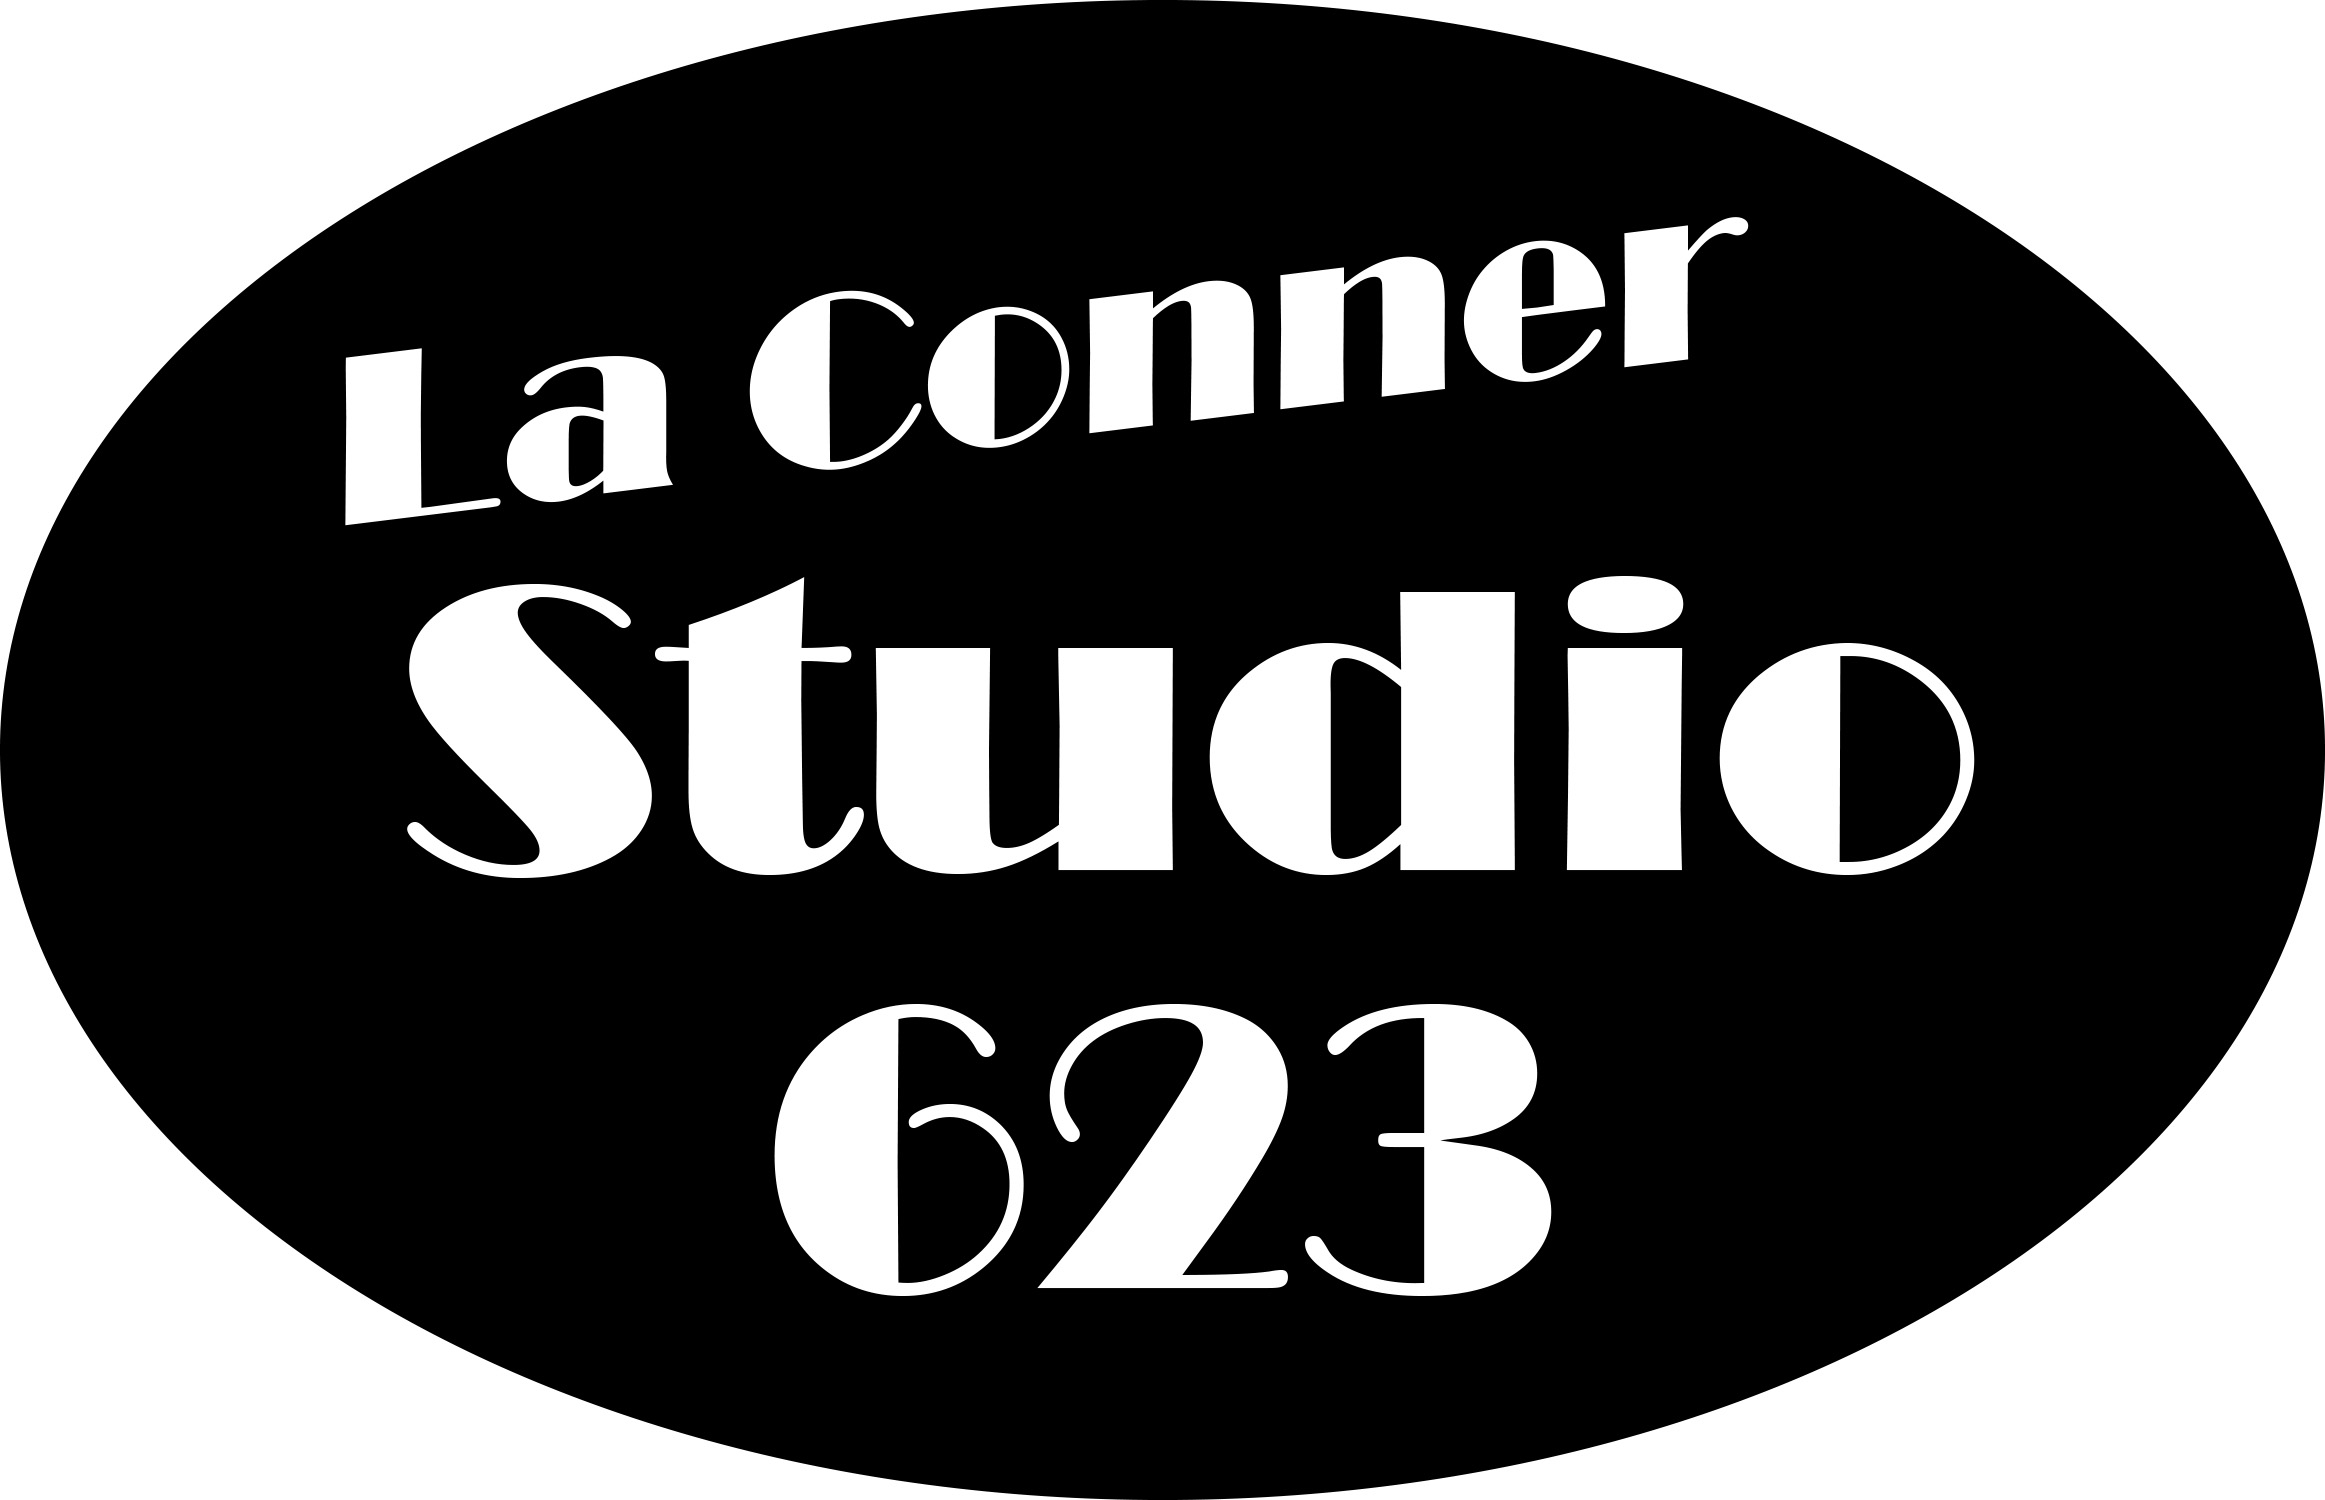 La Conner Studio 623 Logo